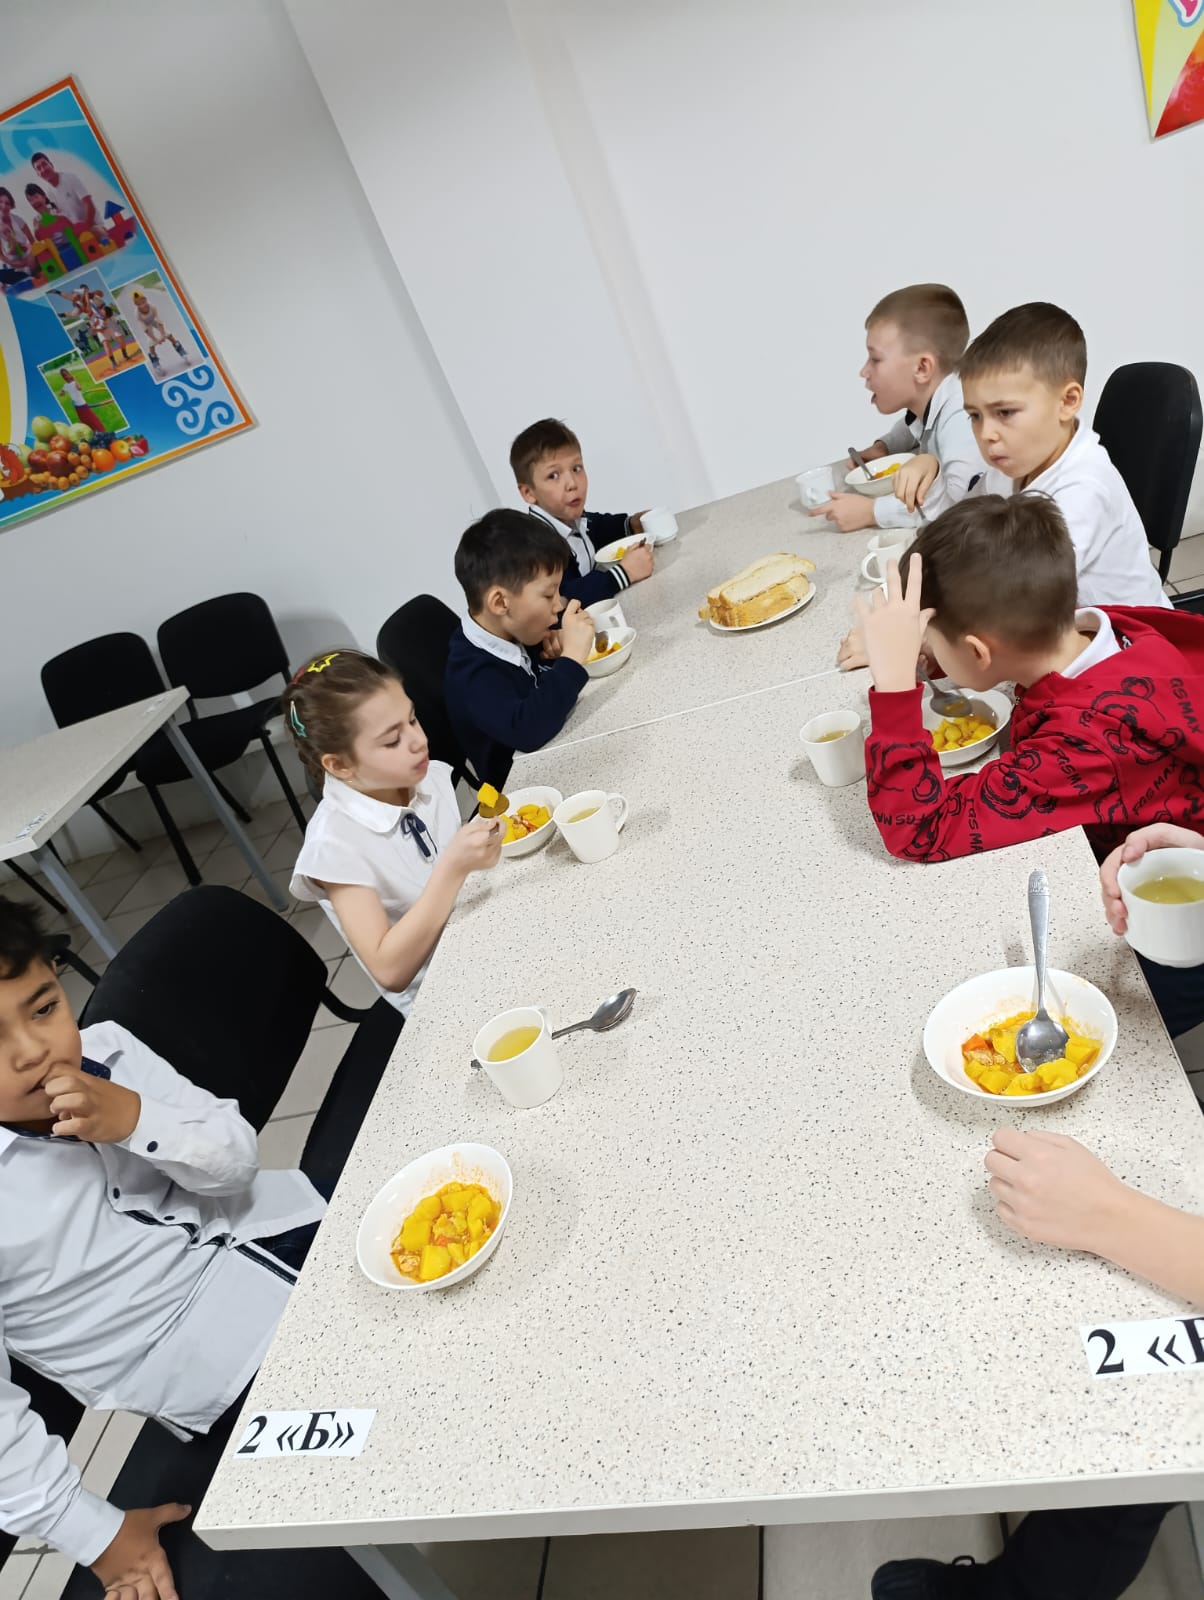 Бесплатное питание в школах Республики Казахстан